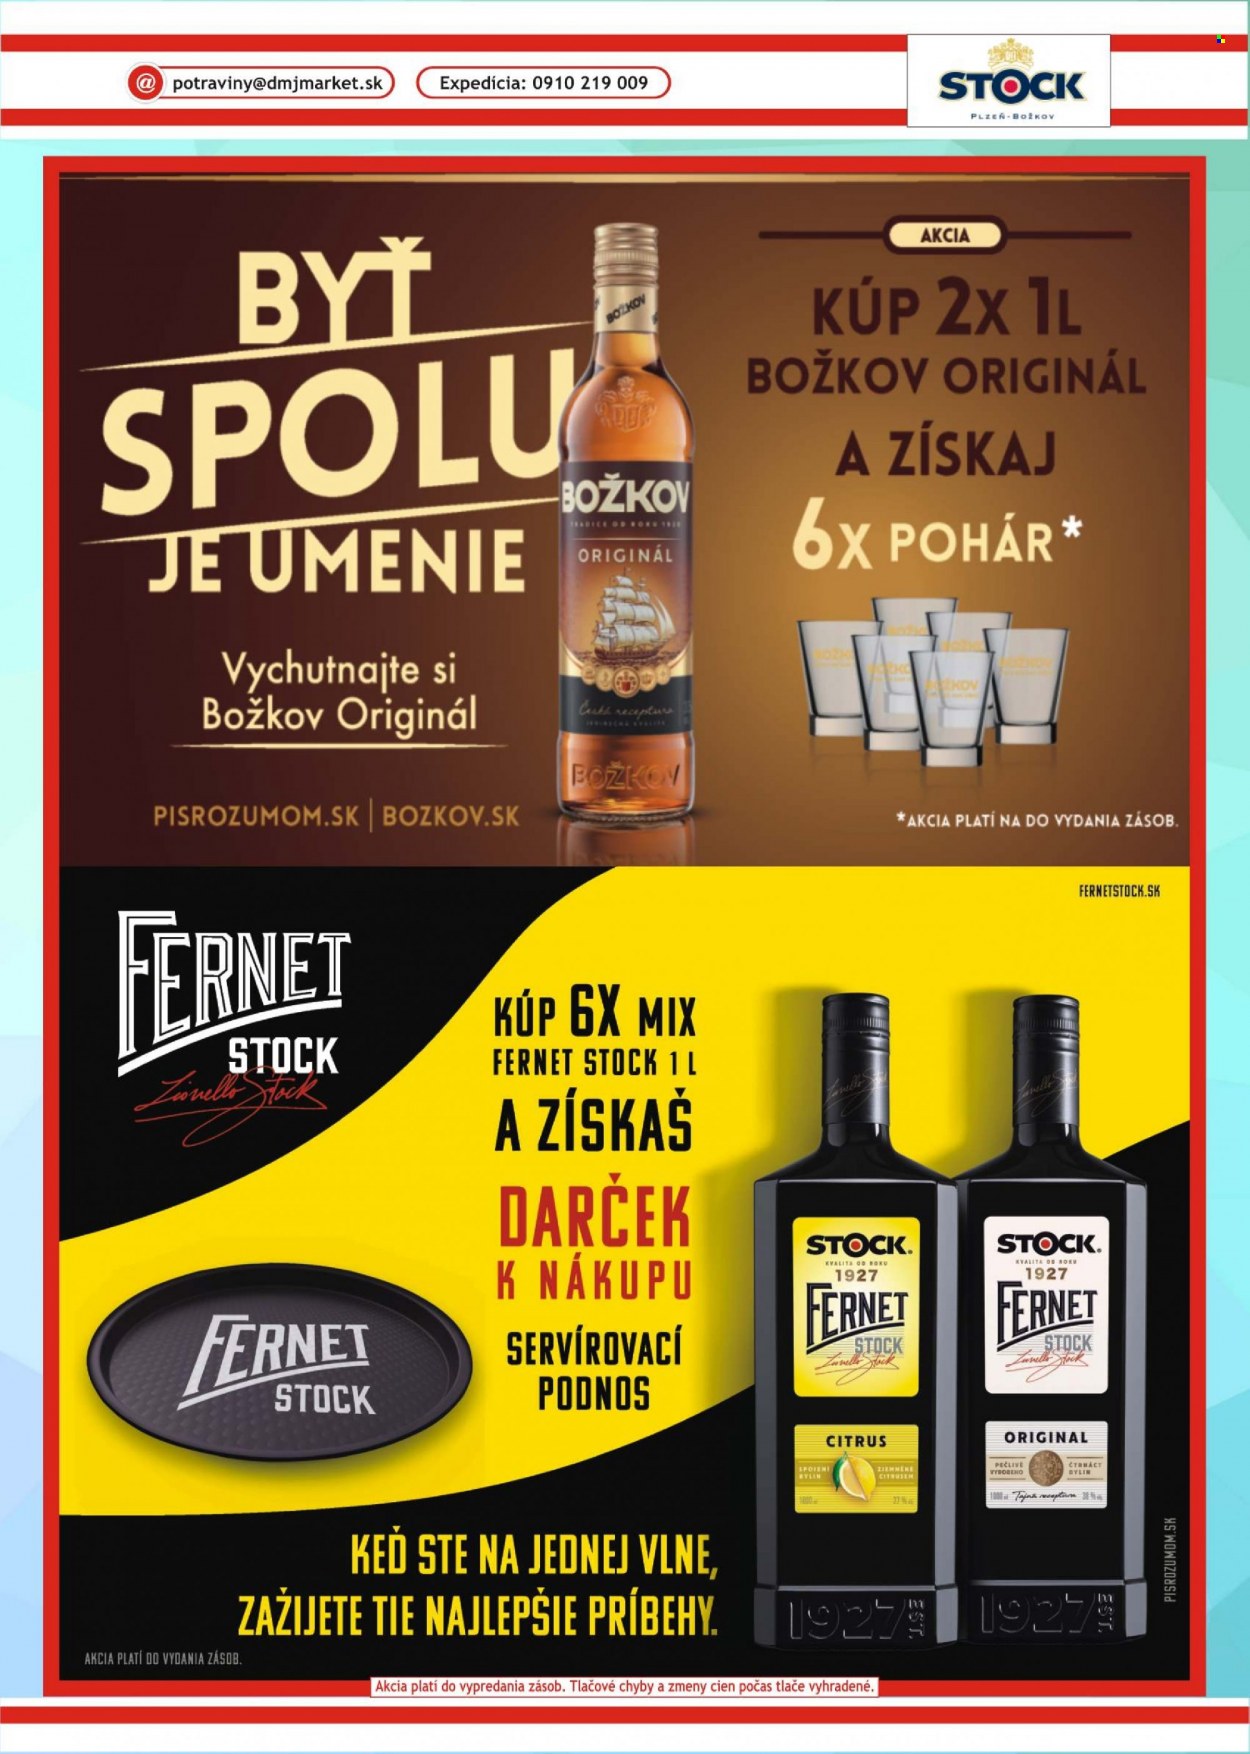 Leták DMJ market - Produkty v akcii - alkohol, Pilsner Urquell, rum, Božkov, bylinný likér, Fernet Stock, Cien. Strana 39.